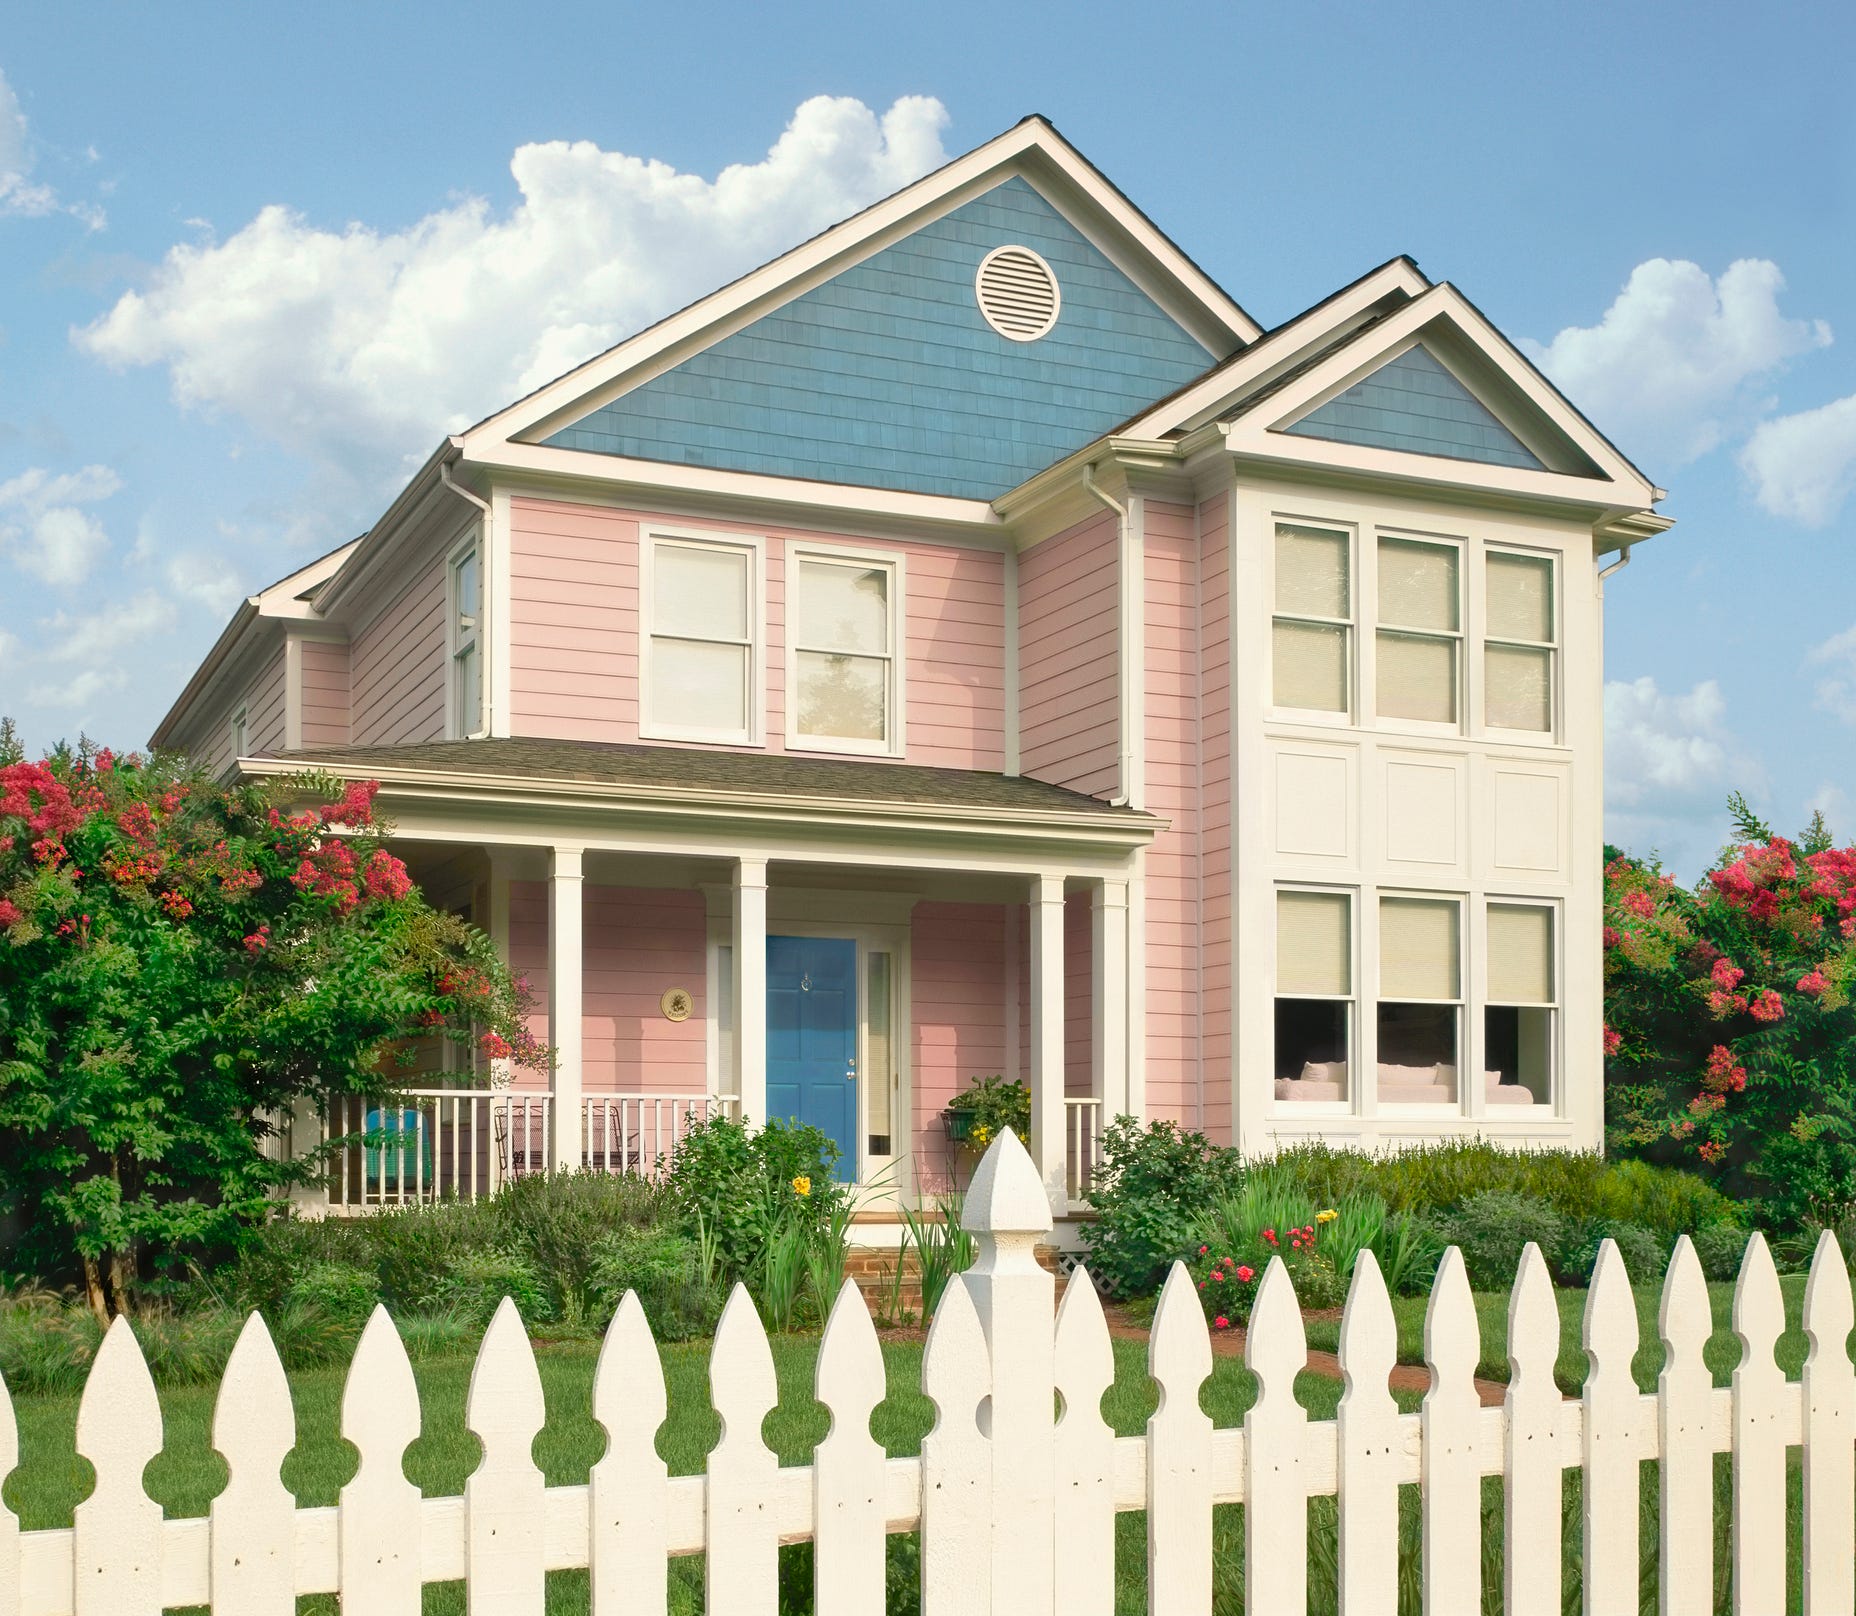 Dargestellt ist ein zweistöckiges Haus mit blassrosa und blassblauen Fassaden.  Im Vordergrund steht ein weißer Zaun.